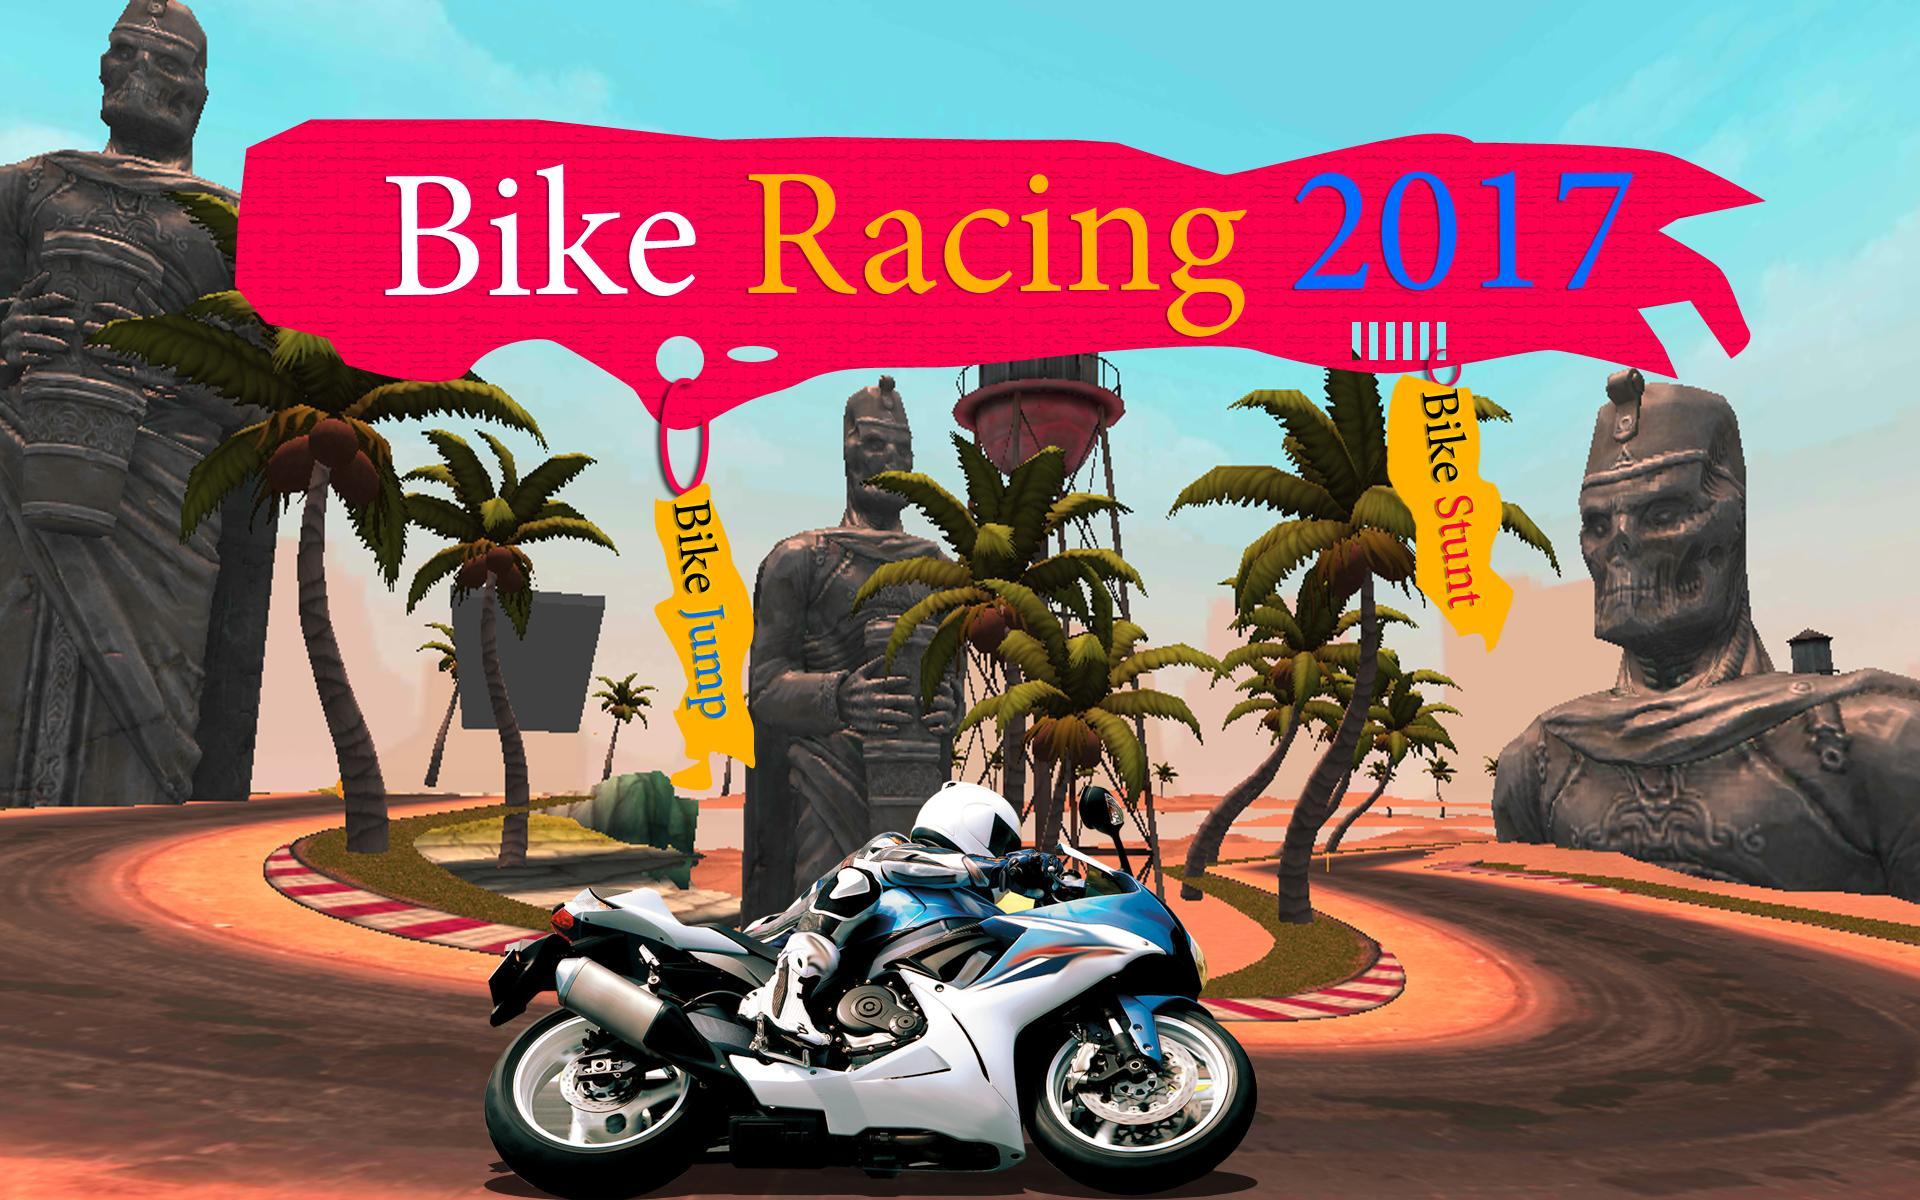 Bike Racing 2019 : The Racing Games APK for Android Download - Screen 0.jpg?fakeurl=1&type=